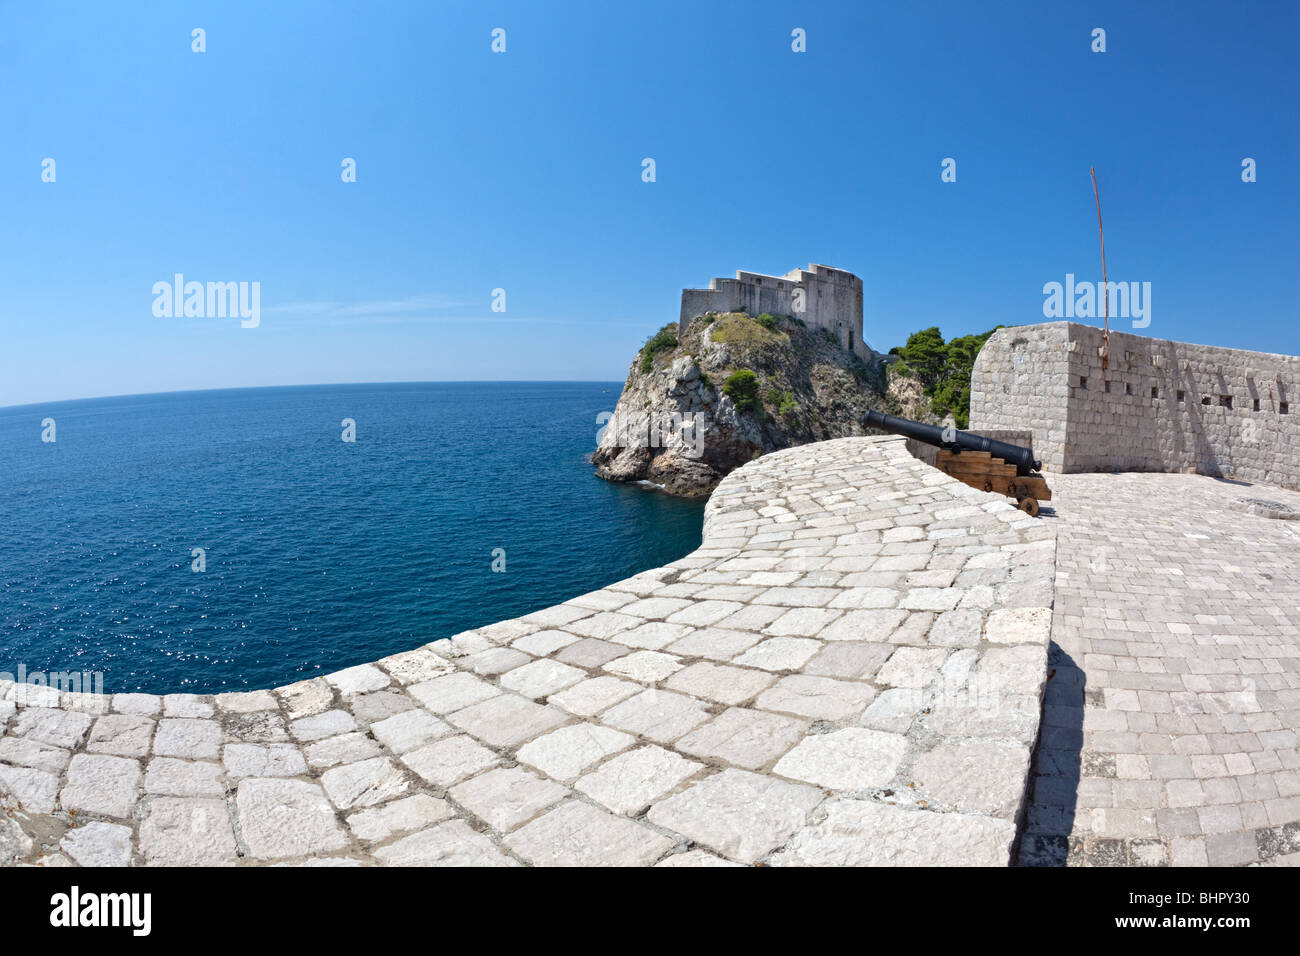 Casco antiguo de Dubrovnik - fortaleza Lovrijenac y las murallas de la ciudad con el cañón. Las lentes de ojo de pez shot con copia espacio en la izquierda. Foto de stock